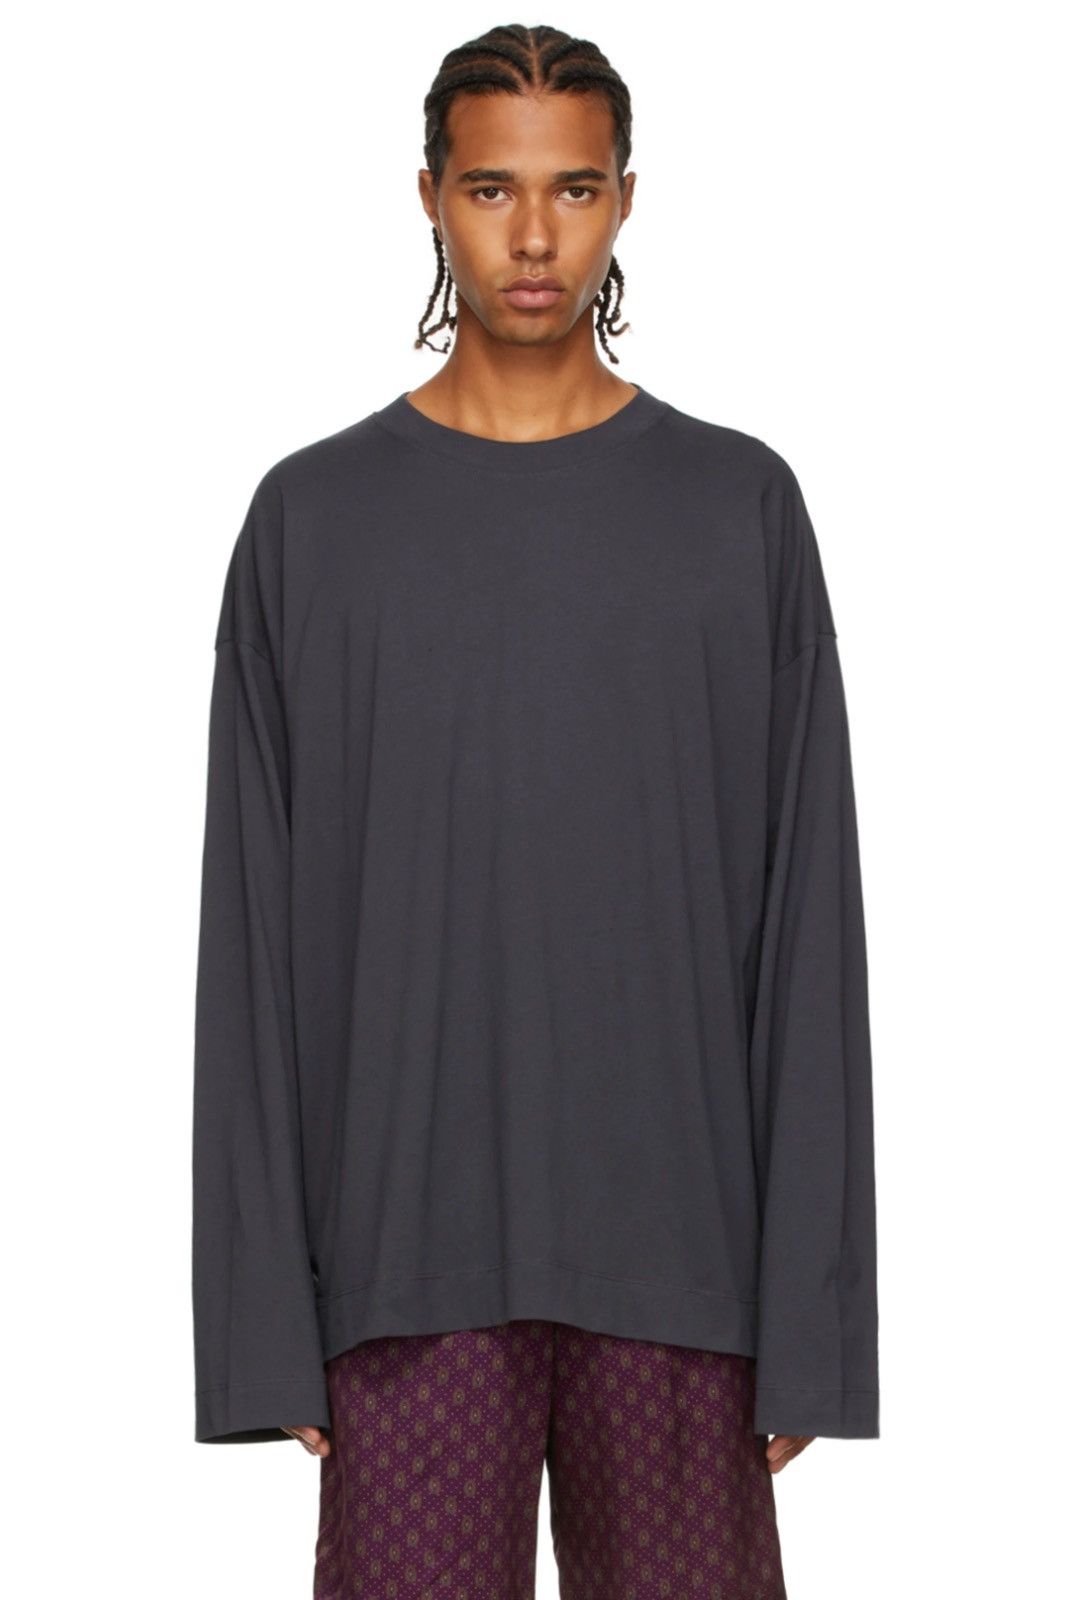 Cotton Jersey Long-Sleeve T-Shirt